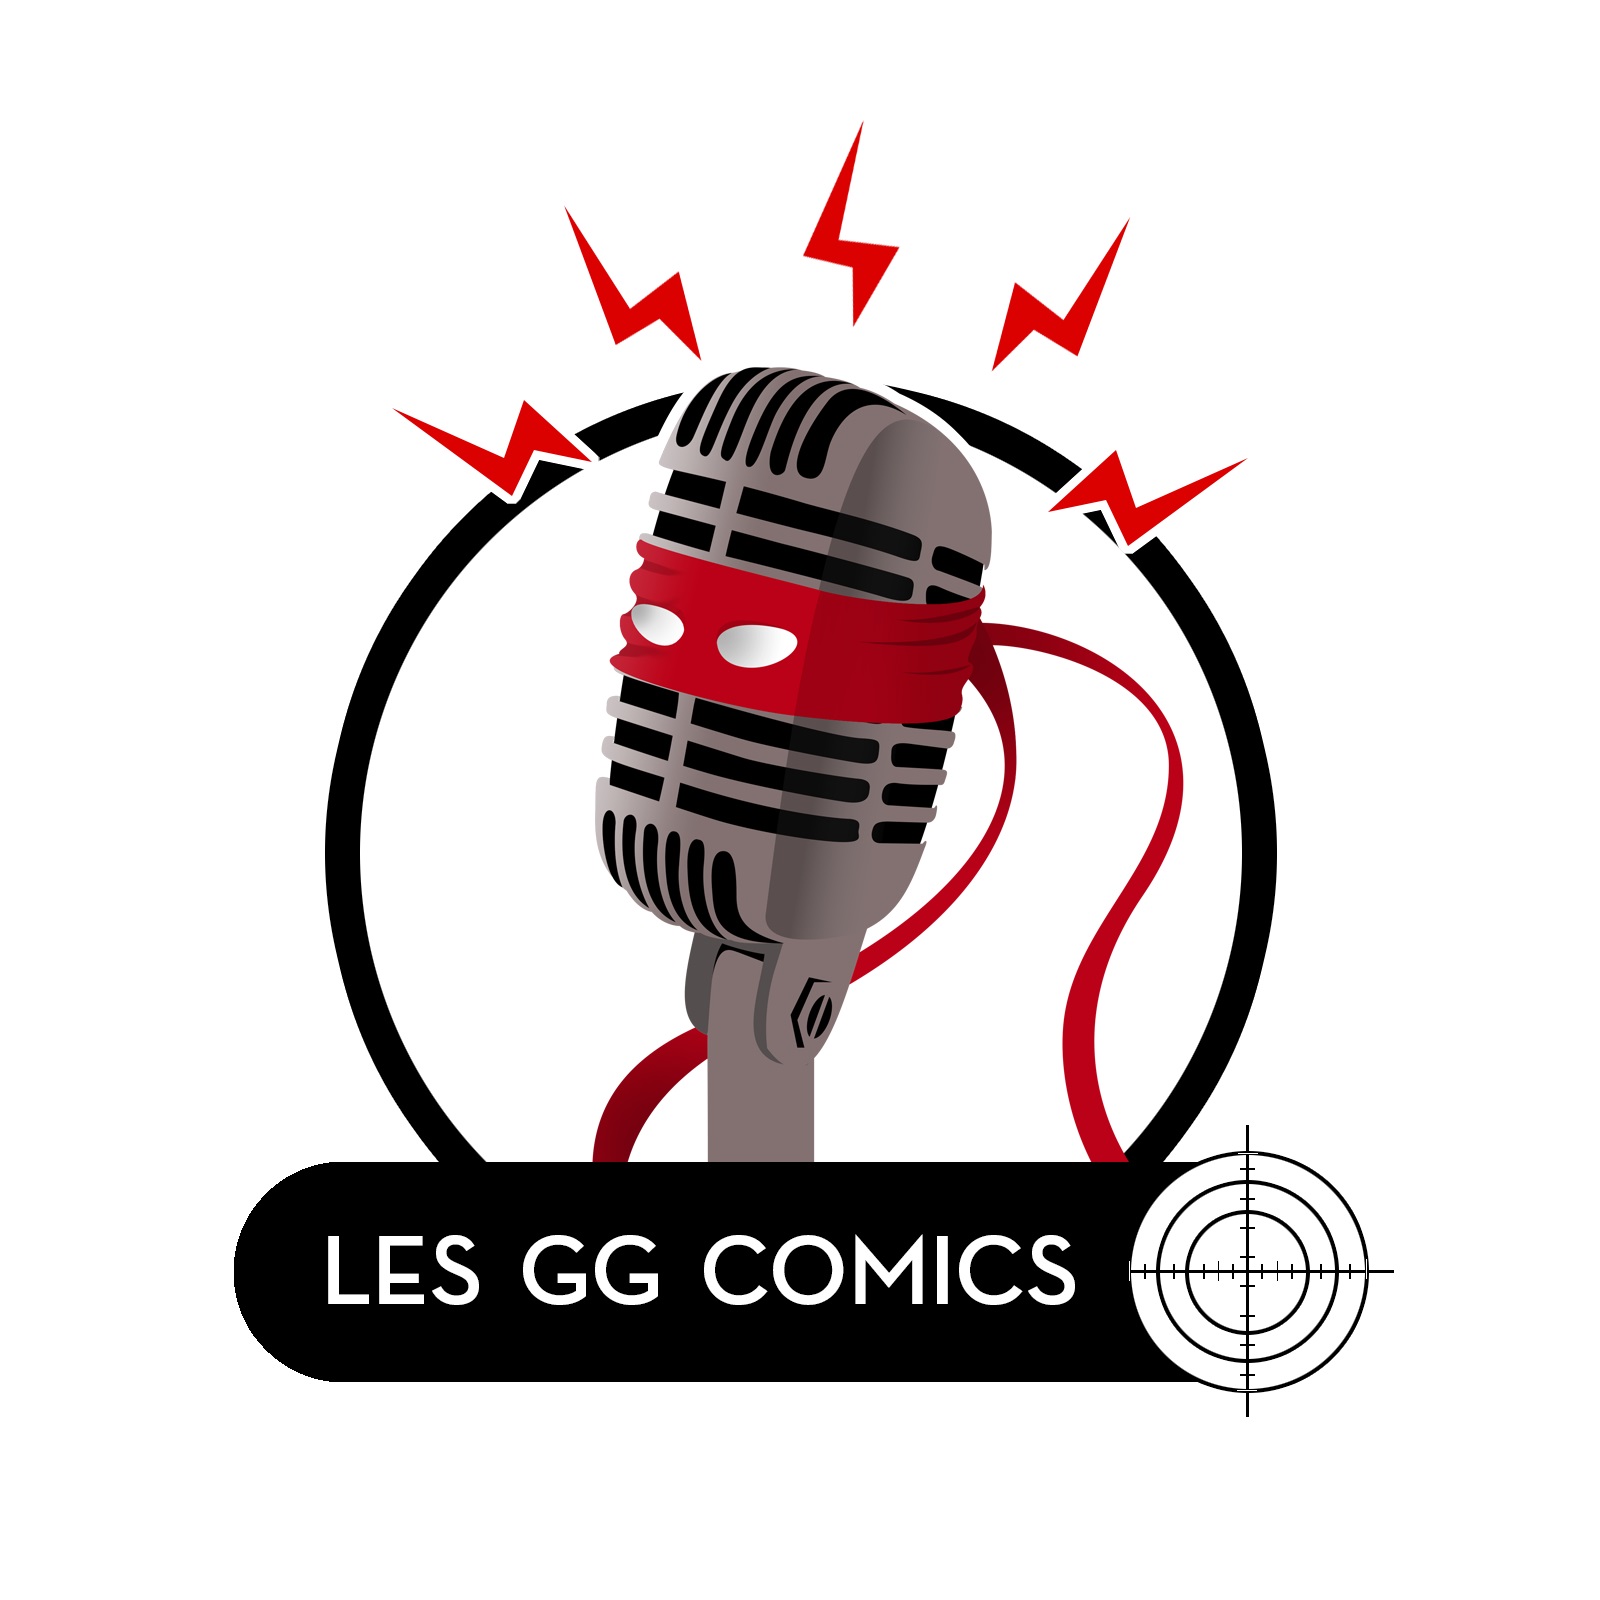 Les GG comics #051 : Les comics physiques doivent-ils craindre le numérique ?